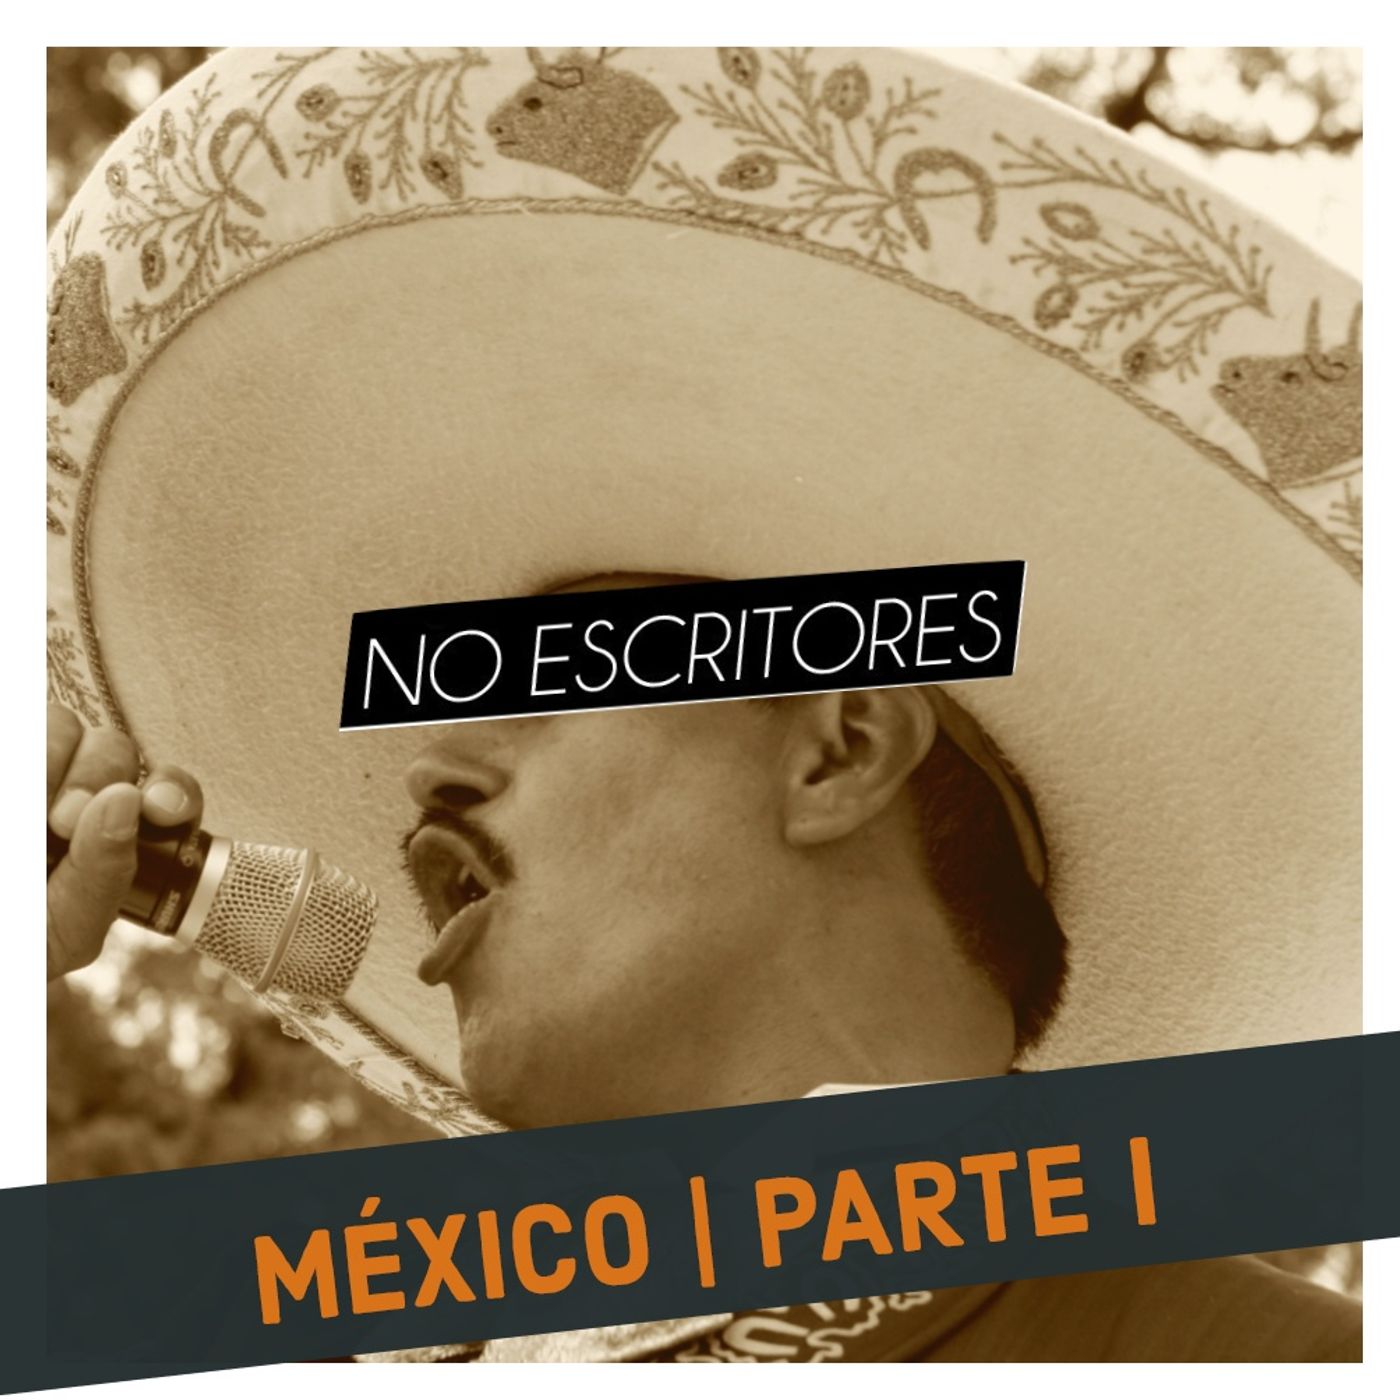 Los No Escritores conversan: Cultura pop y arte "bajo" mexicano. (México | Parte I)